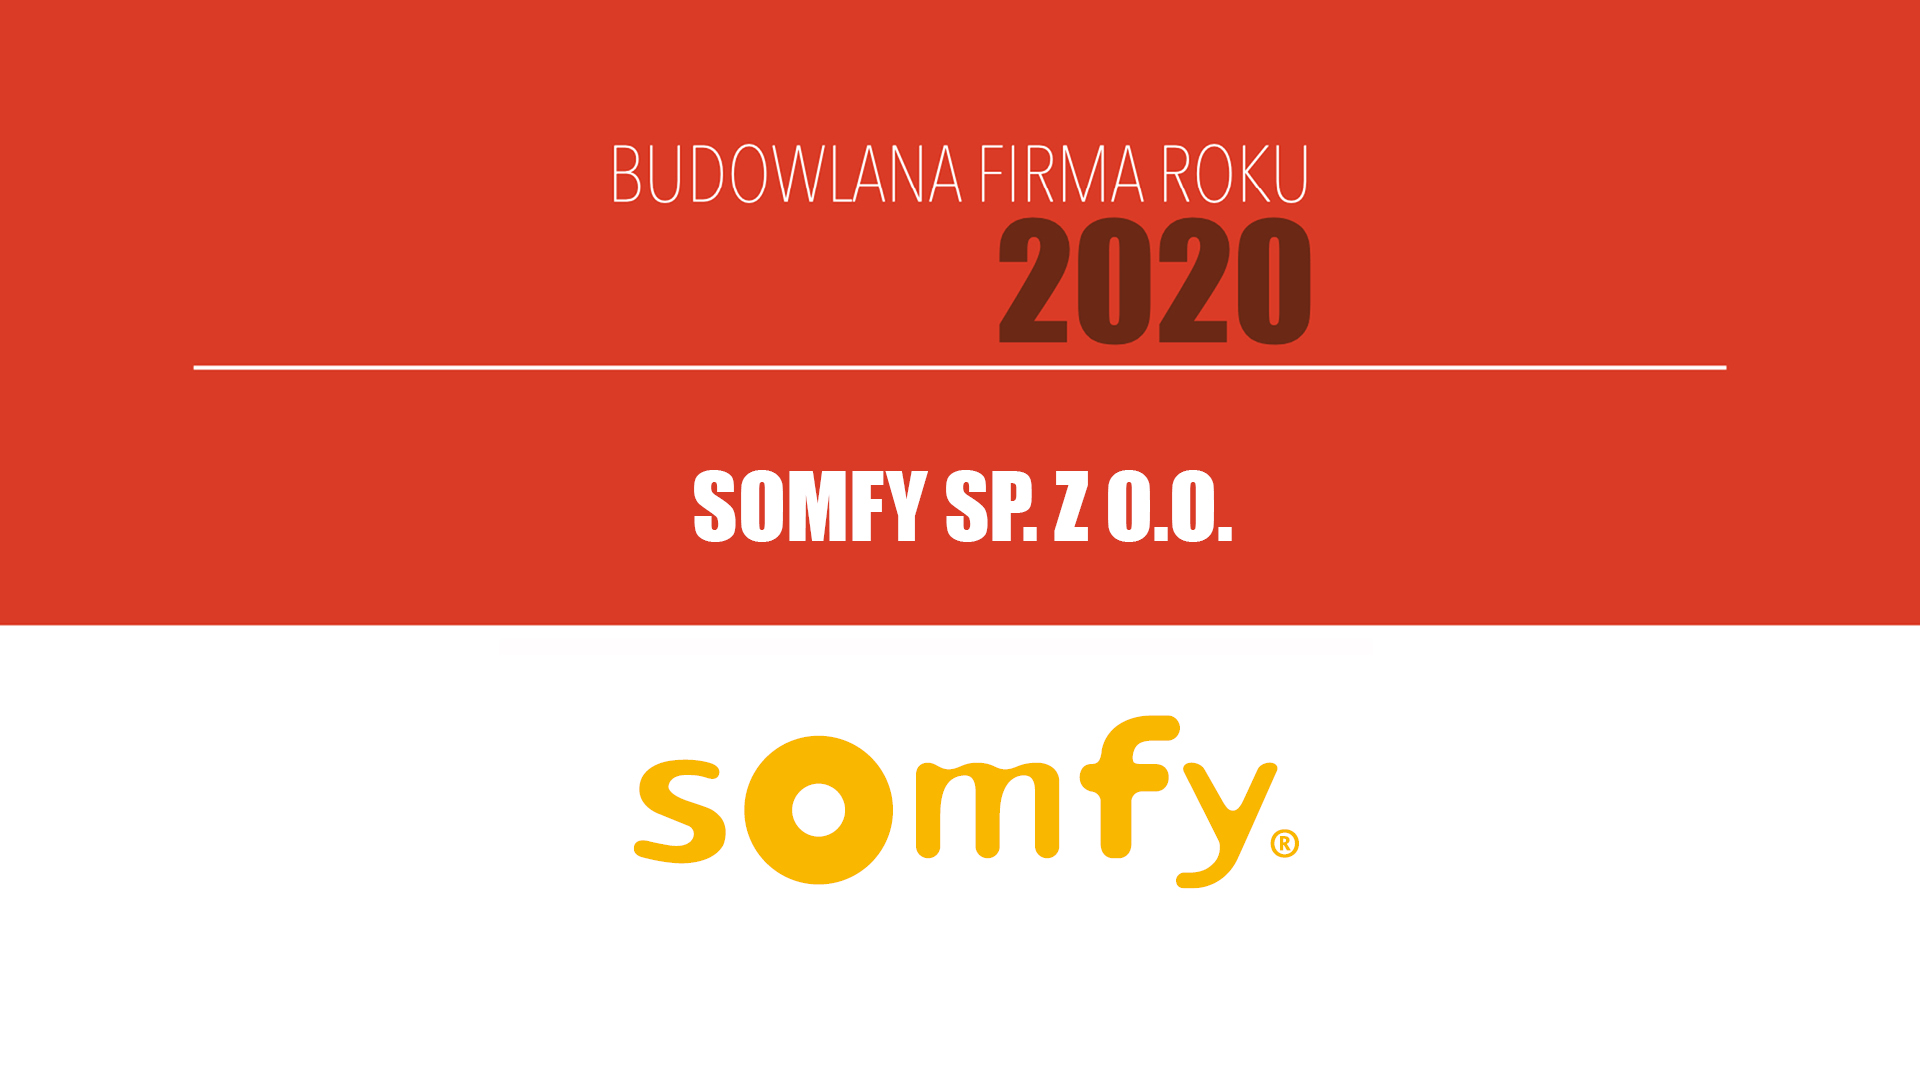 SOMFY SP. Z O.O. – Budowlana Firma Roku 2020